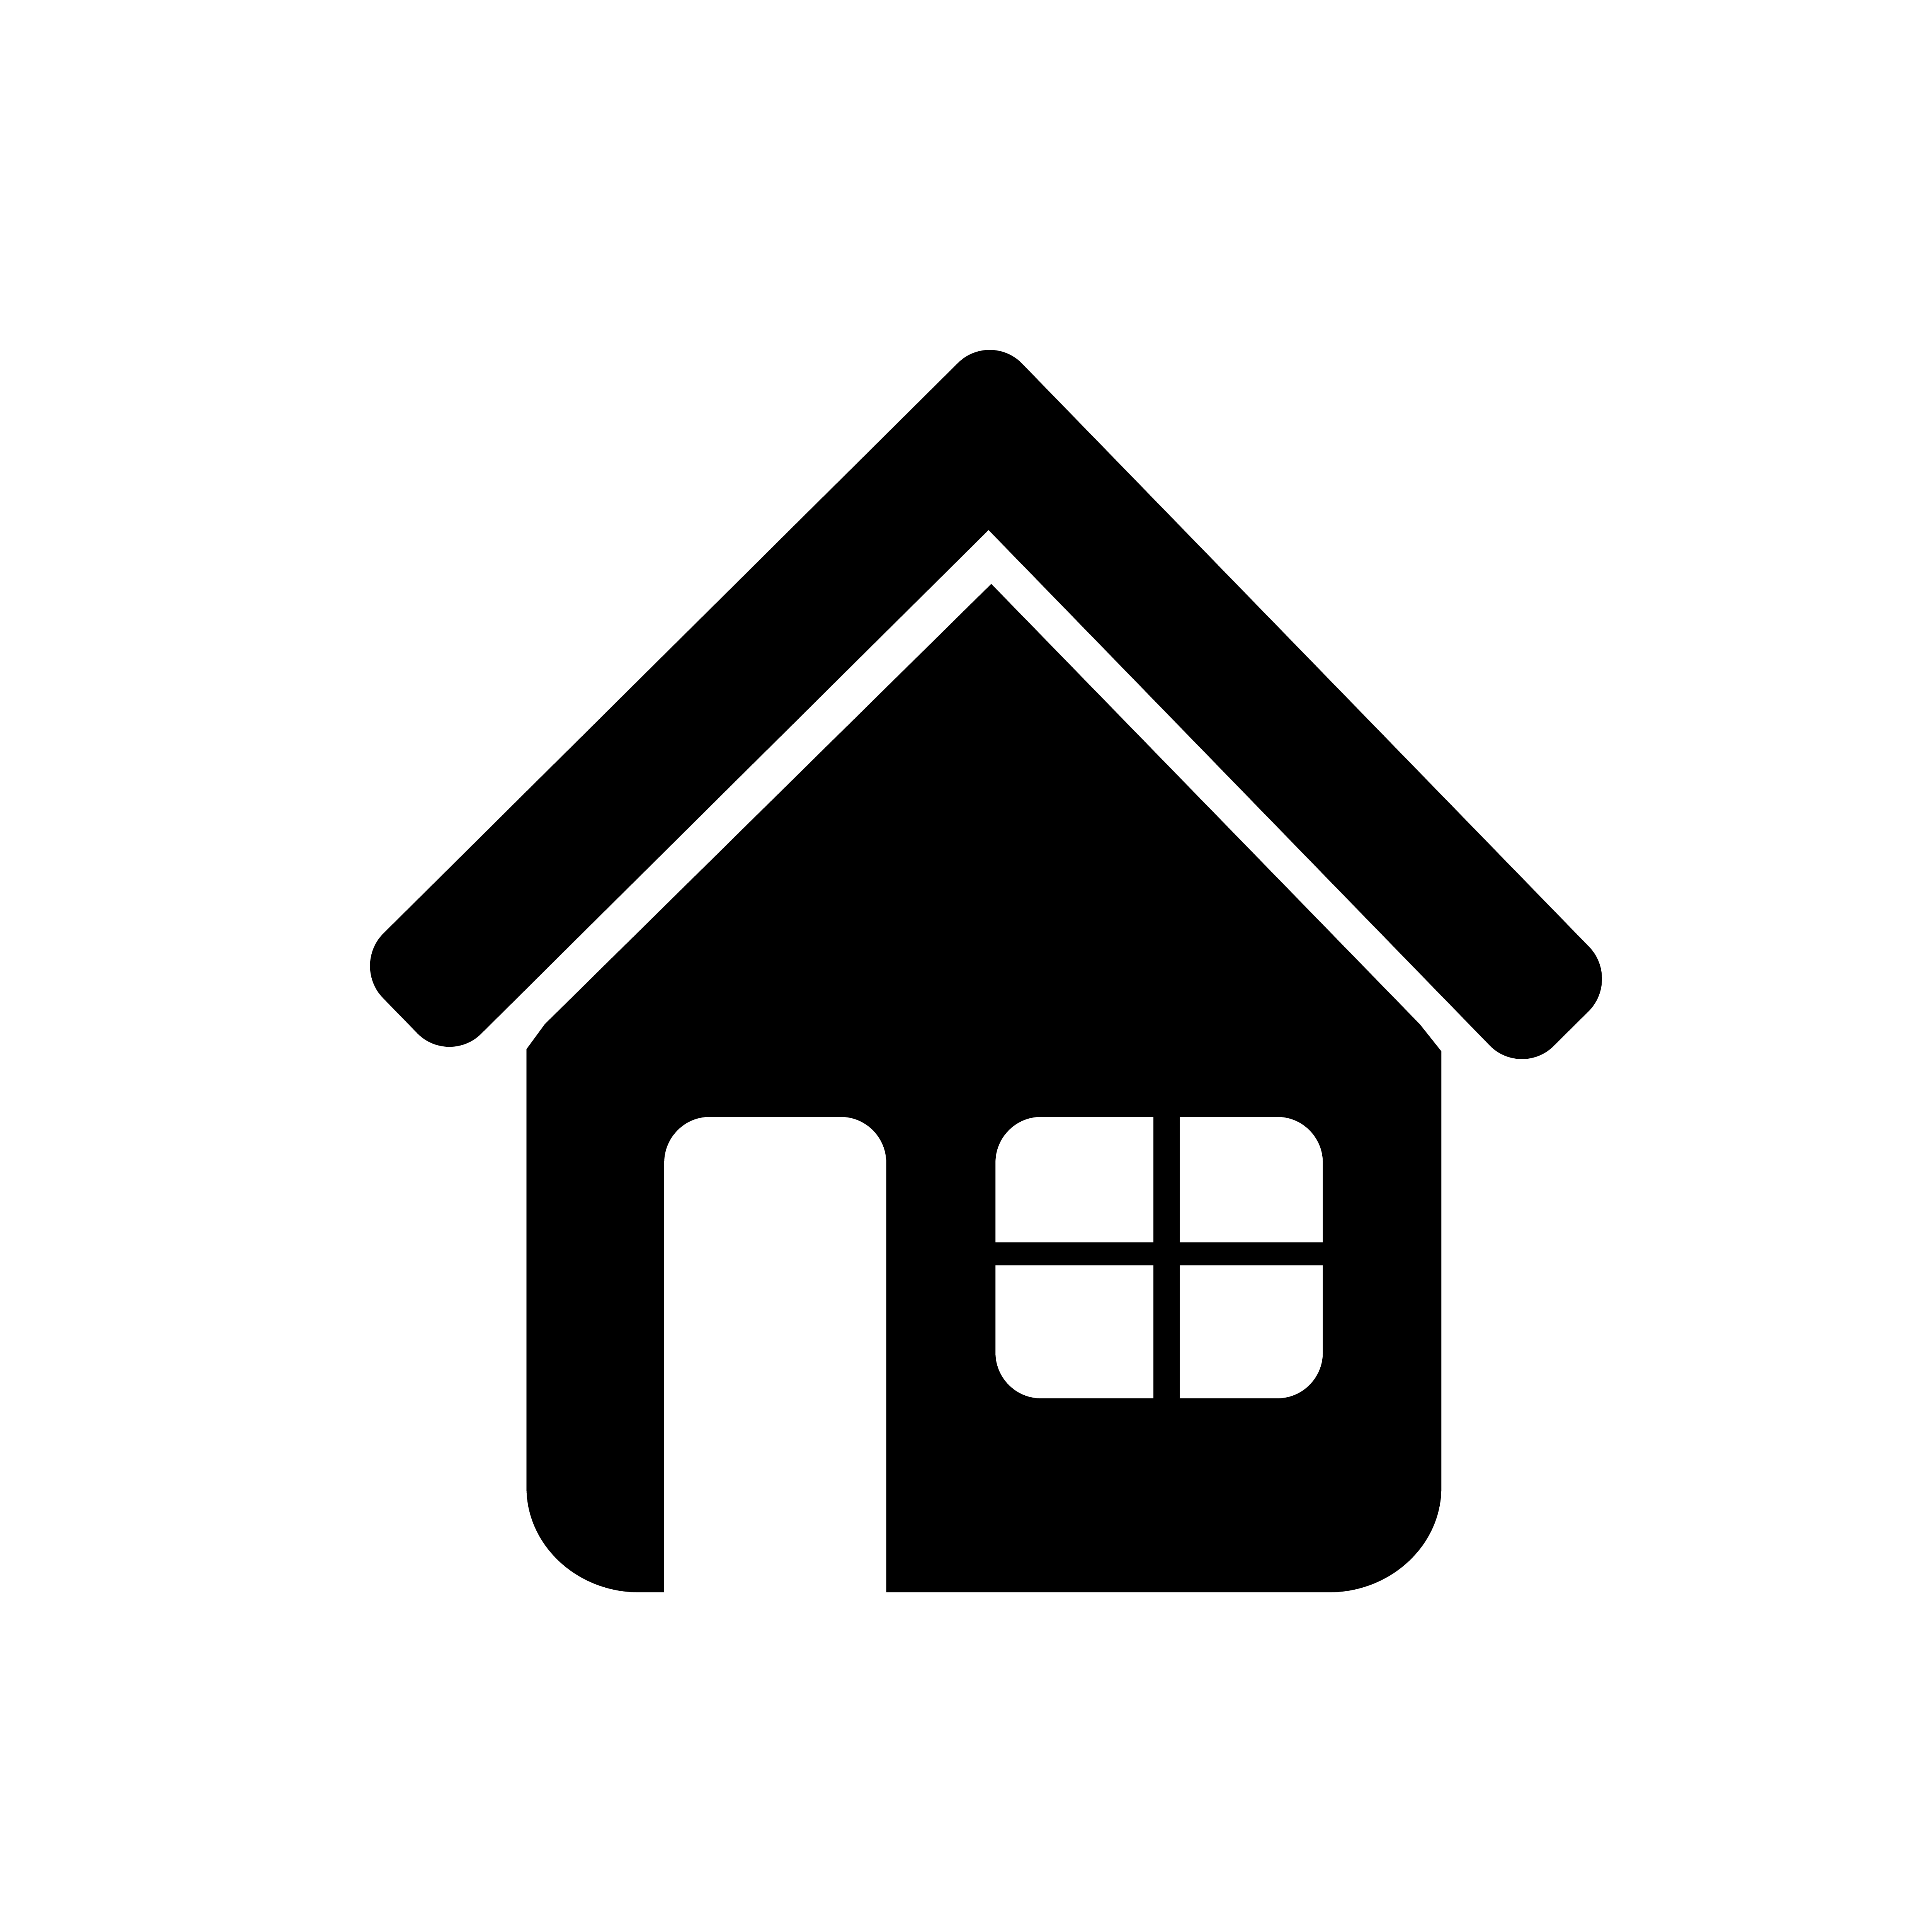 Teken van huis pictogram - Download Free Vectors, Vector Bestanden